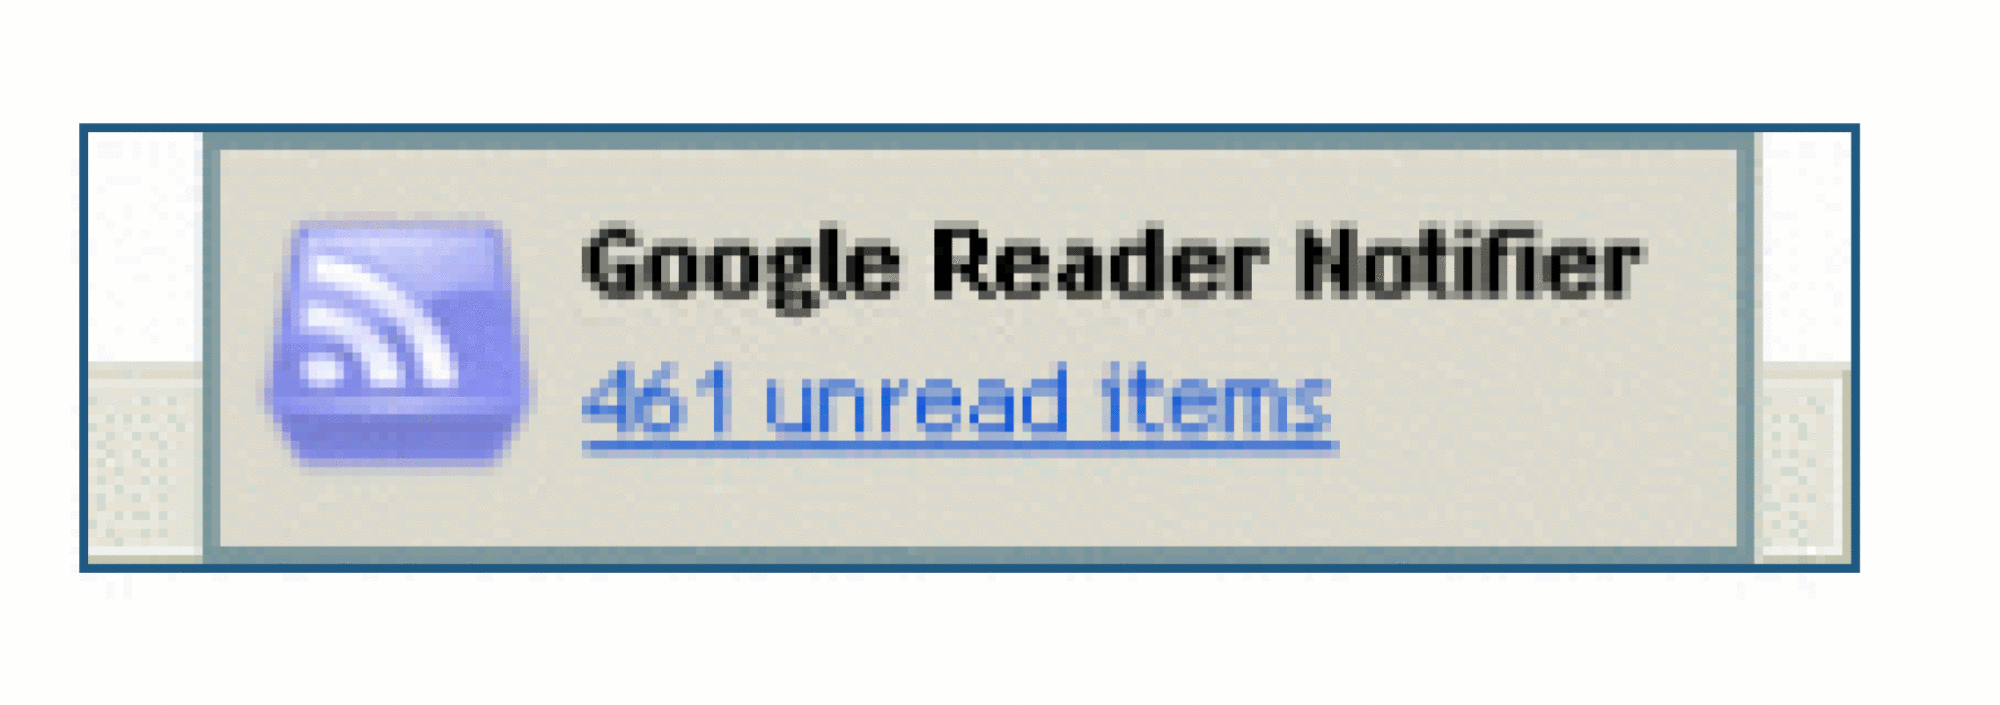 Screenshot: Google Reader Notifier popup advises of "461 unread items".